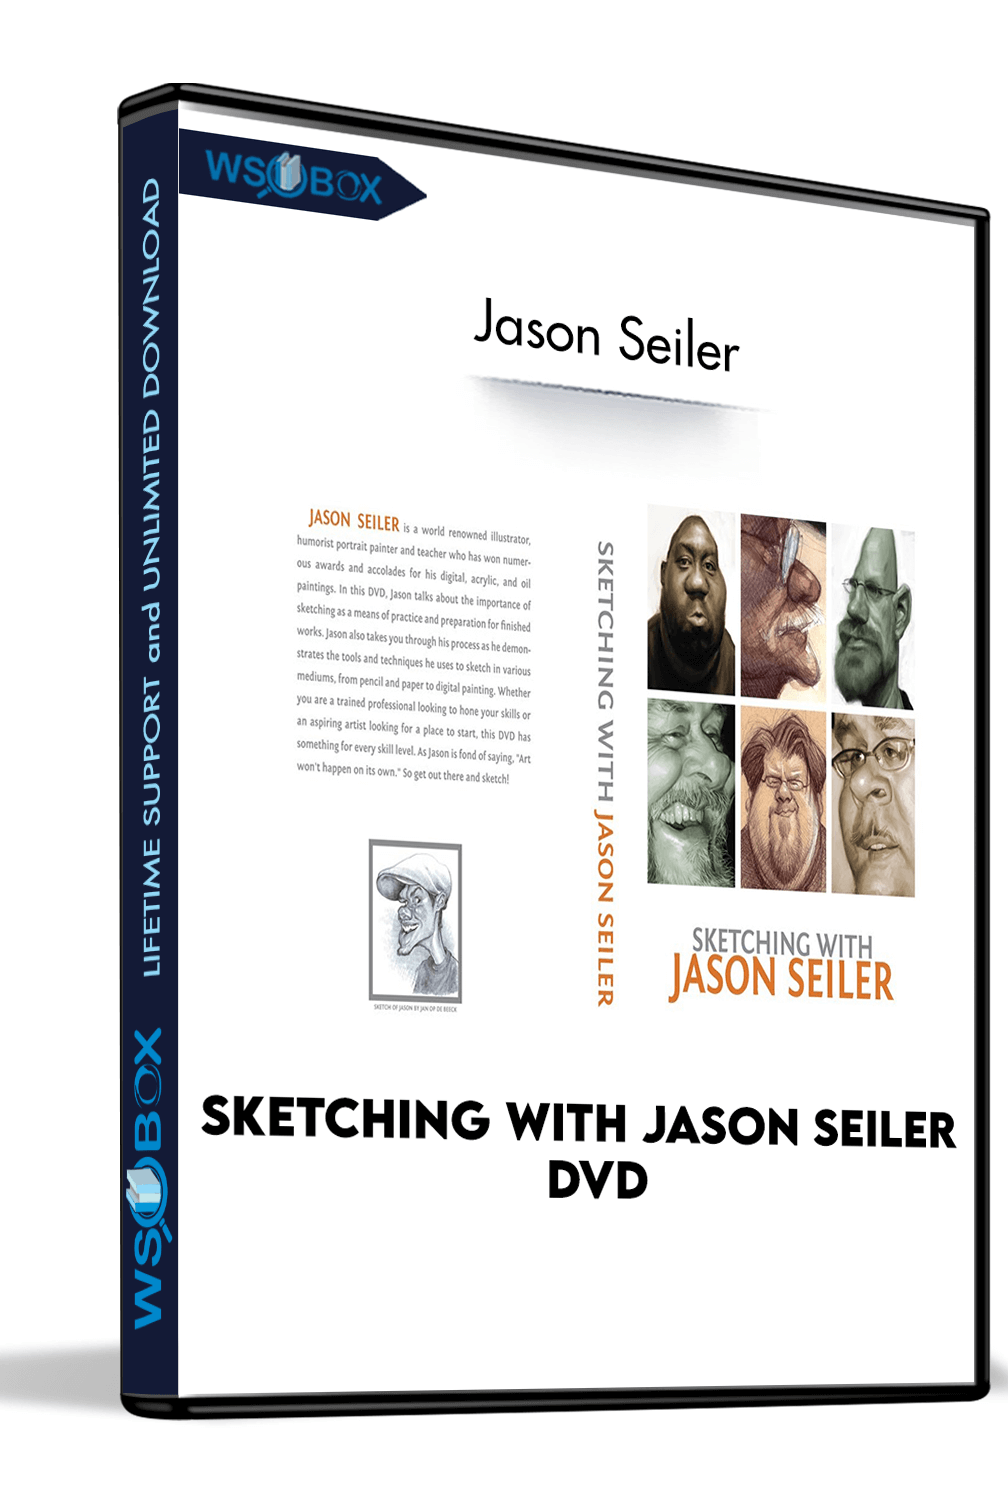 Sketching With Jason Seiler DVD – Jason Seiler